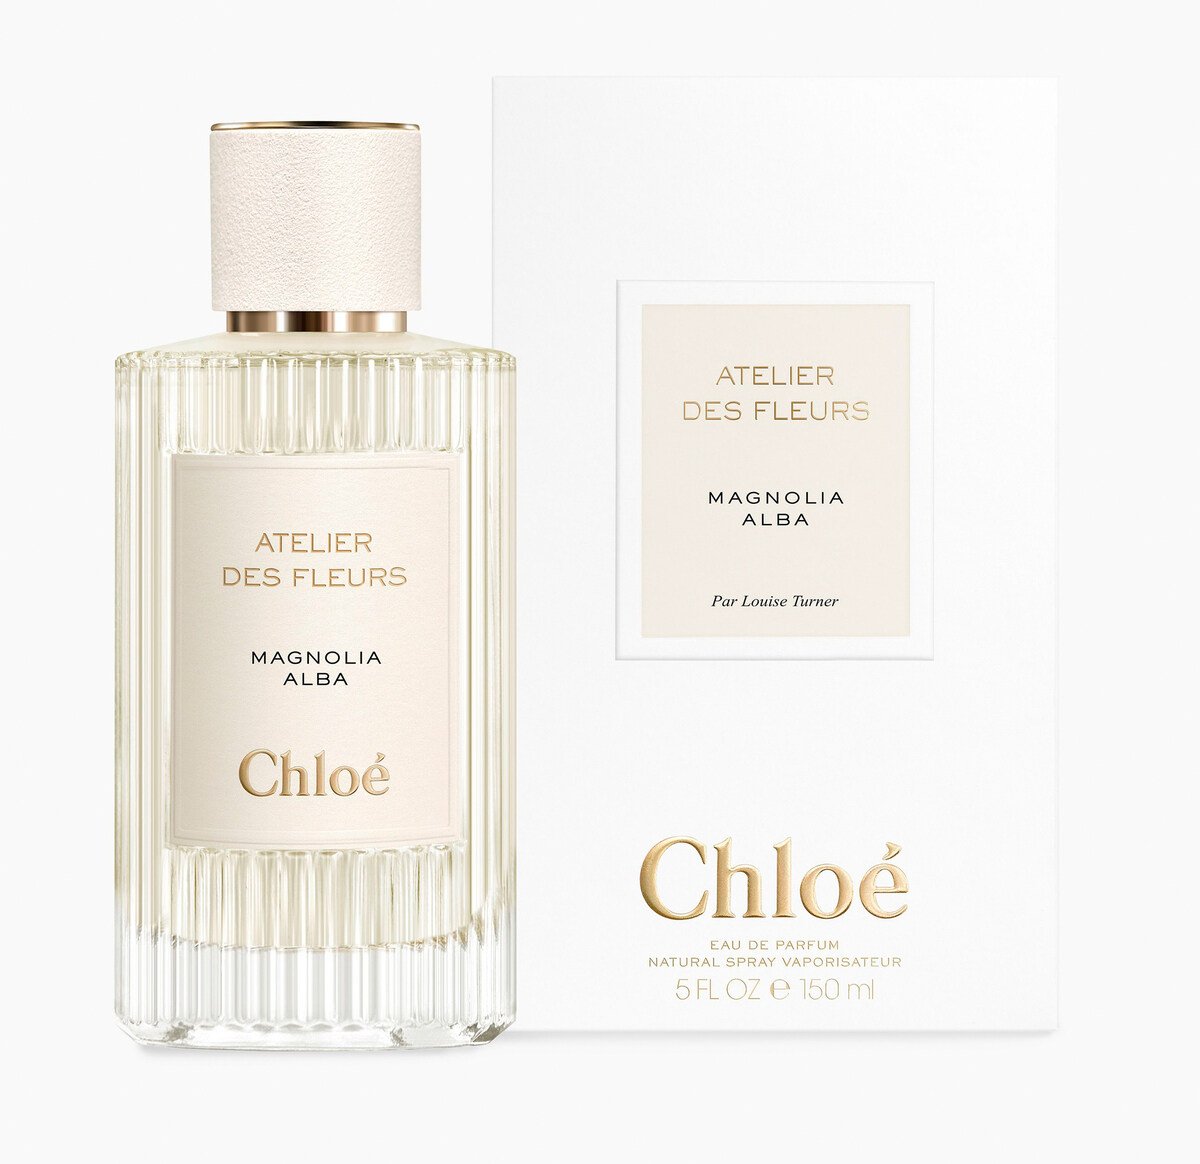 Atelier des Fleurs - Magnolia Alba by Chloé » Reviews & Perfume Facts